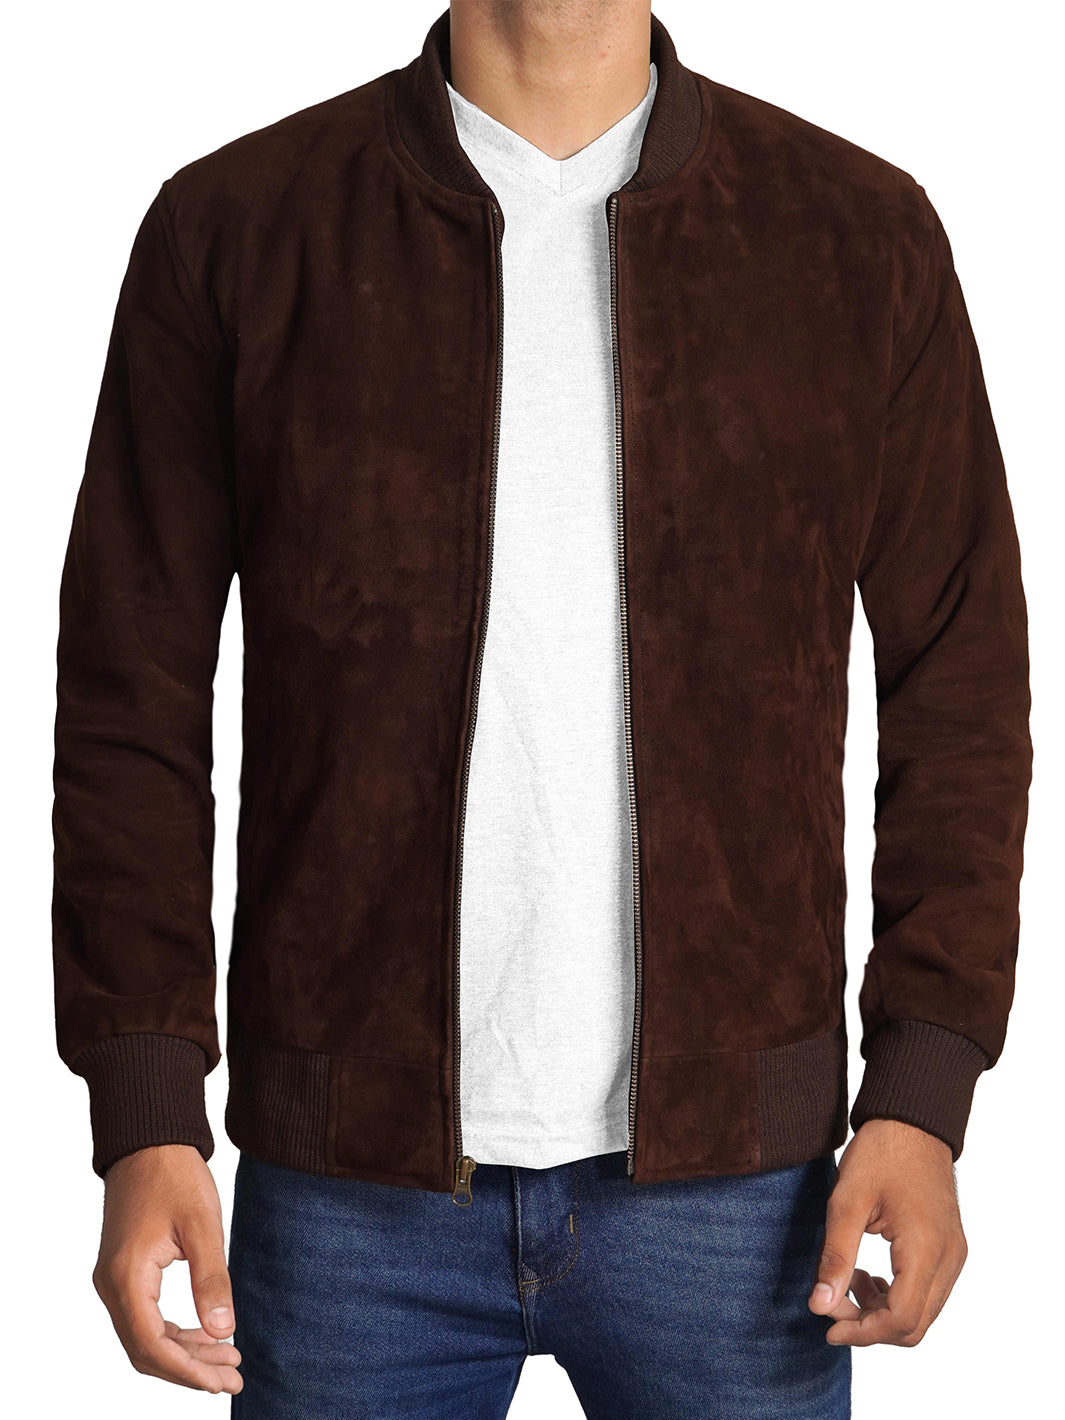 Adamsville Dark Brown Bomber Jacket | Suede Leather | Decrum